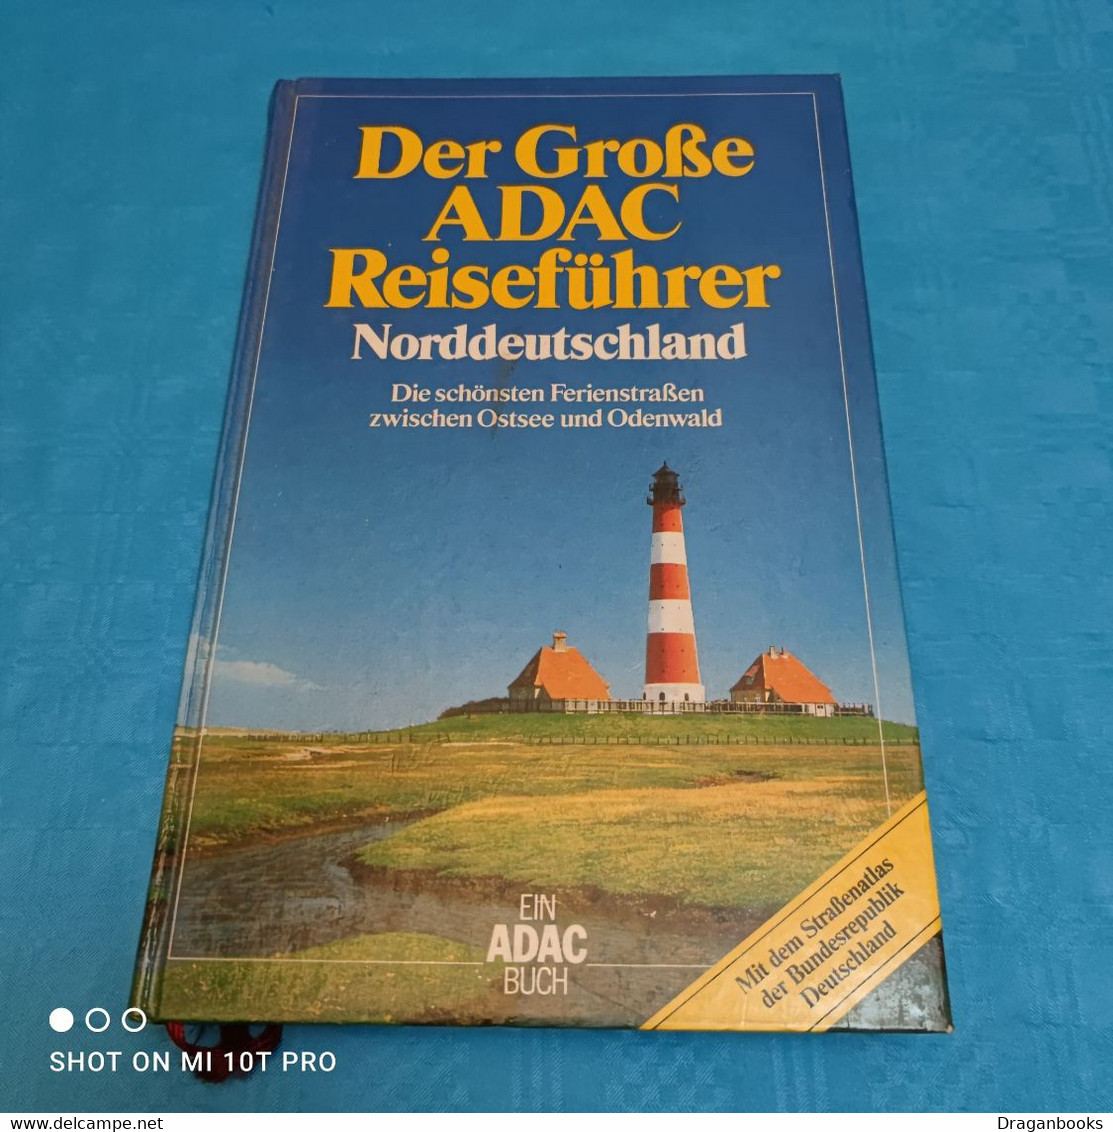 Der Grosse ADAC Reiseführer - Norddeutschland - Germania